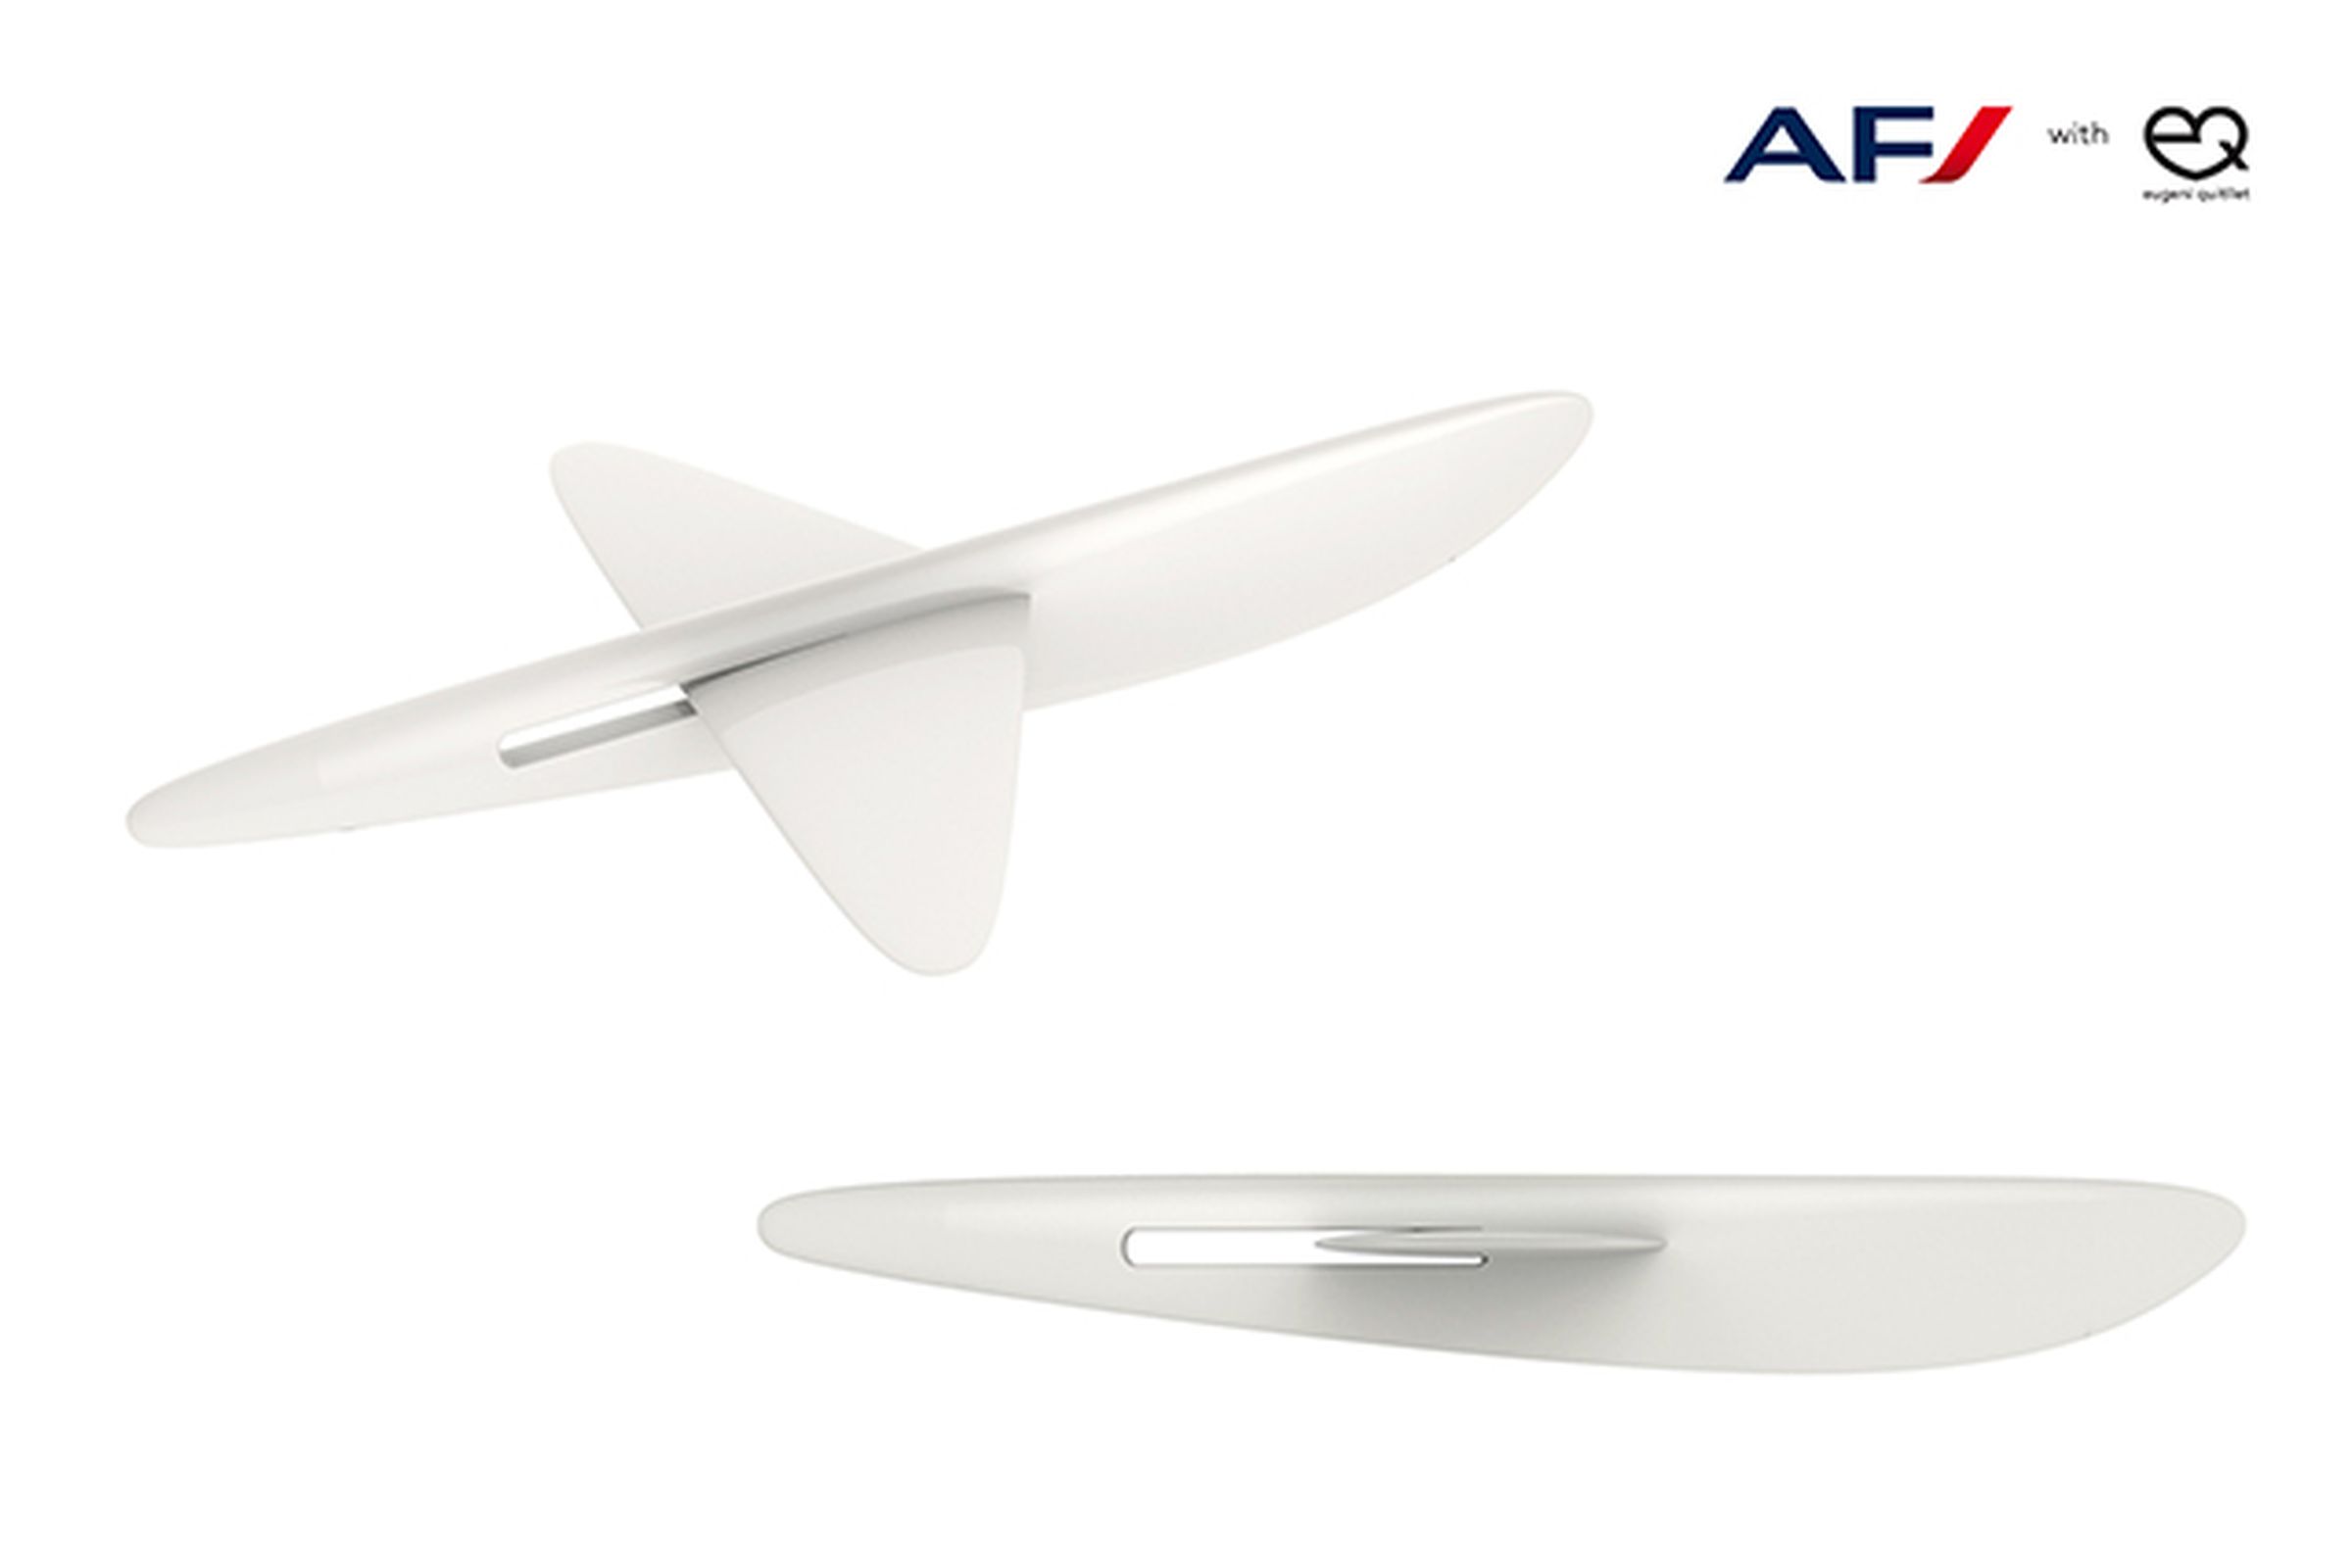 Air France cutlery